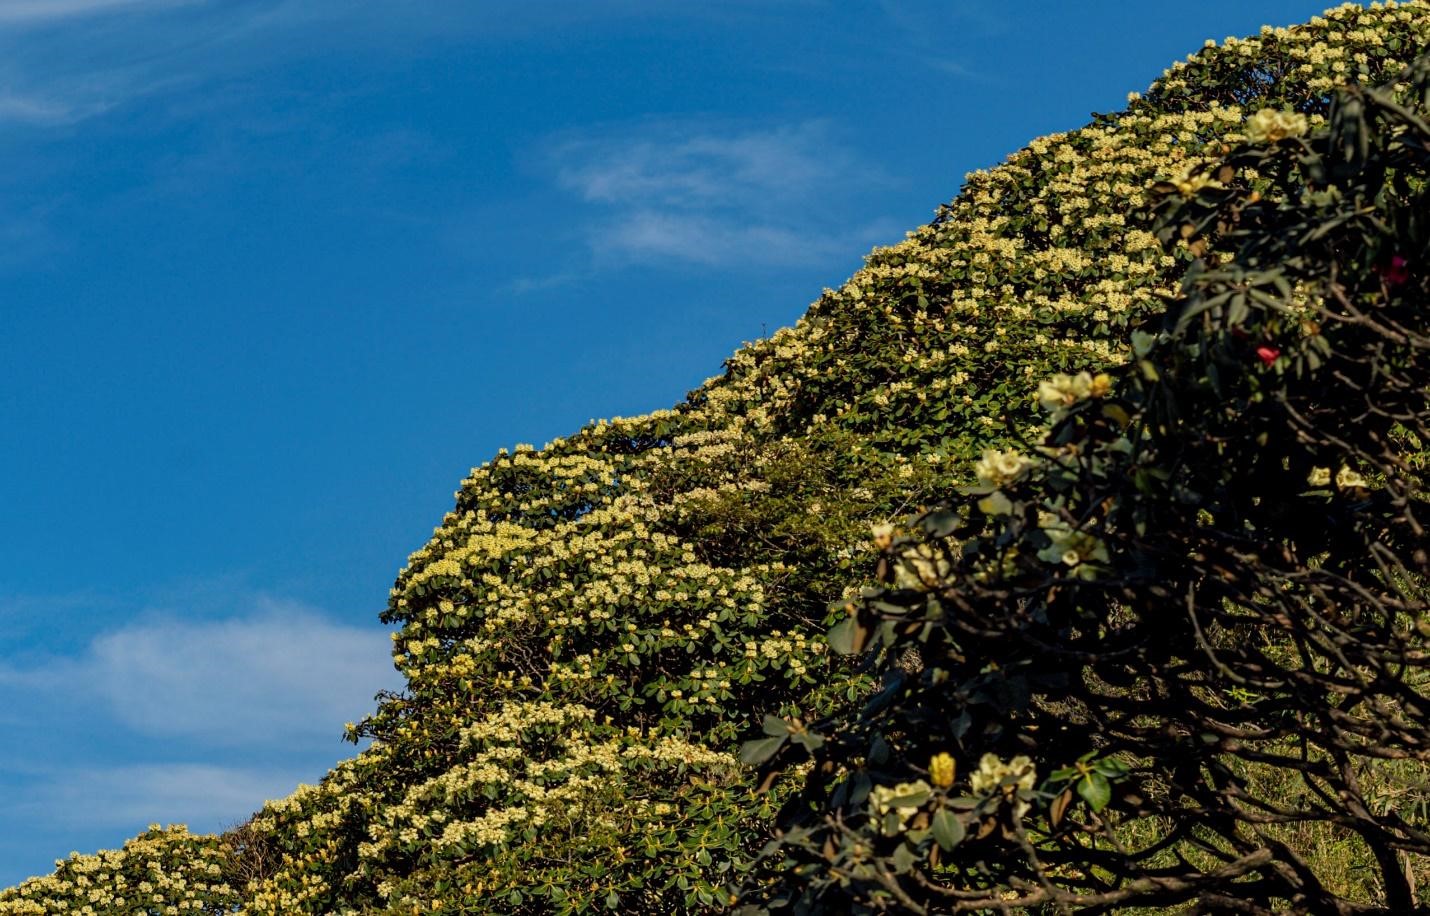 Tại dãy Hoàng Liên Sơn có tới 40 loài đỗ quyên khác nhau, nở rộ theo từng đợt, từ tháng 2 đến tháng 6 hàng năm. Vì vậy, mùa hè là thời điểm Fansipan thu hút đông đảo du khách nhất trong năm bởi vẻ đẹp thơ mộng hiếm có của nữ hoàng hoa Tây Bắc